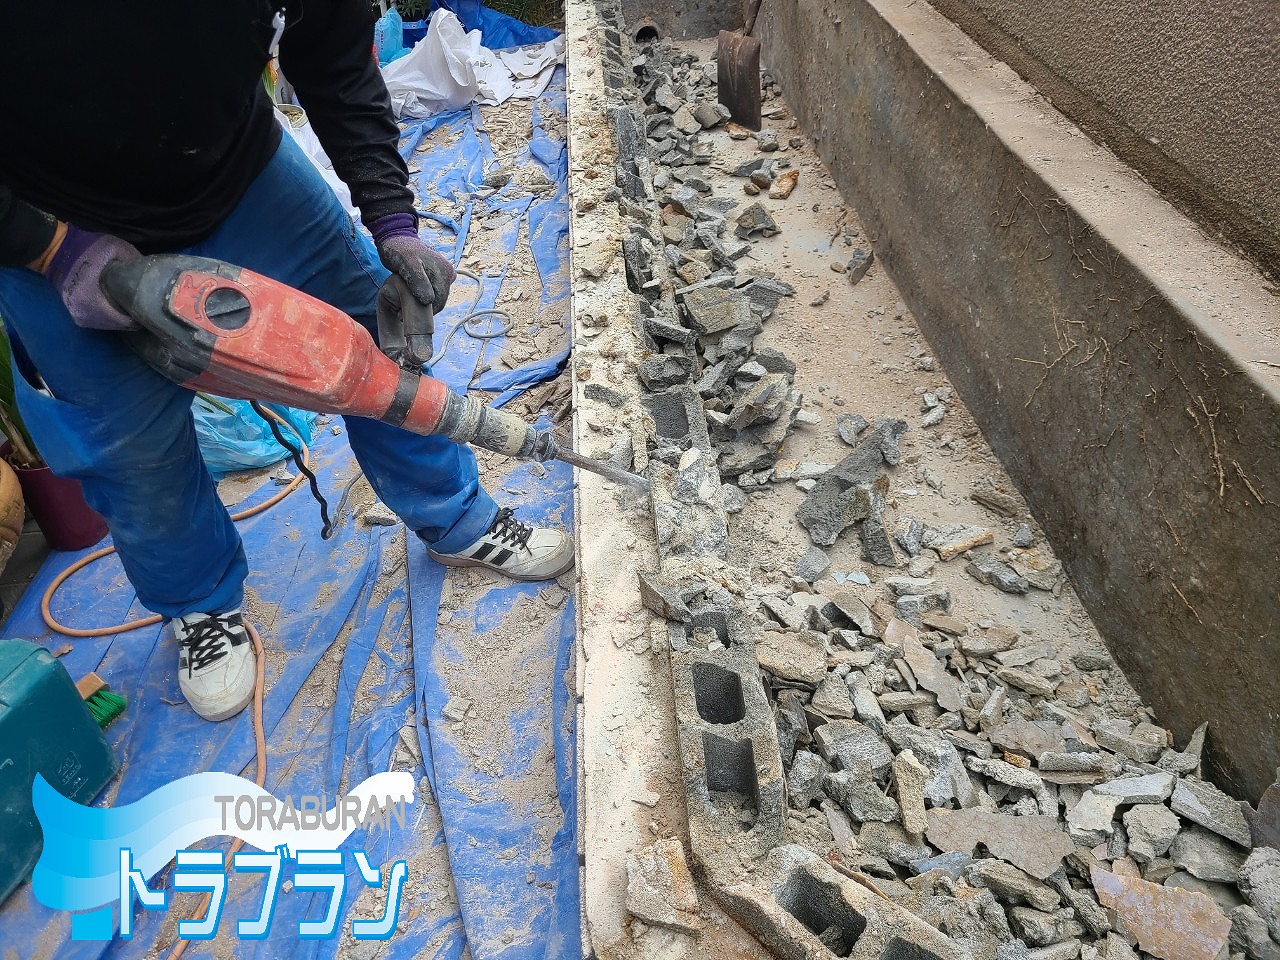 戸建て 花壇撤去 解体 作業 水漏れ 外壁 外壁修繕 神戸市 トラブラン